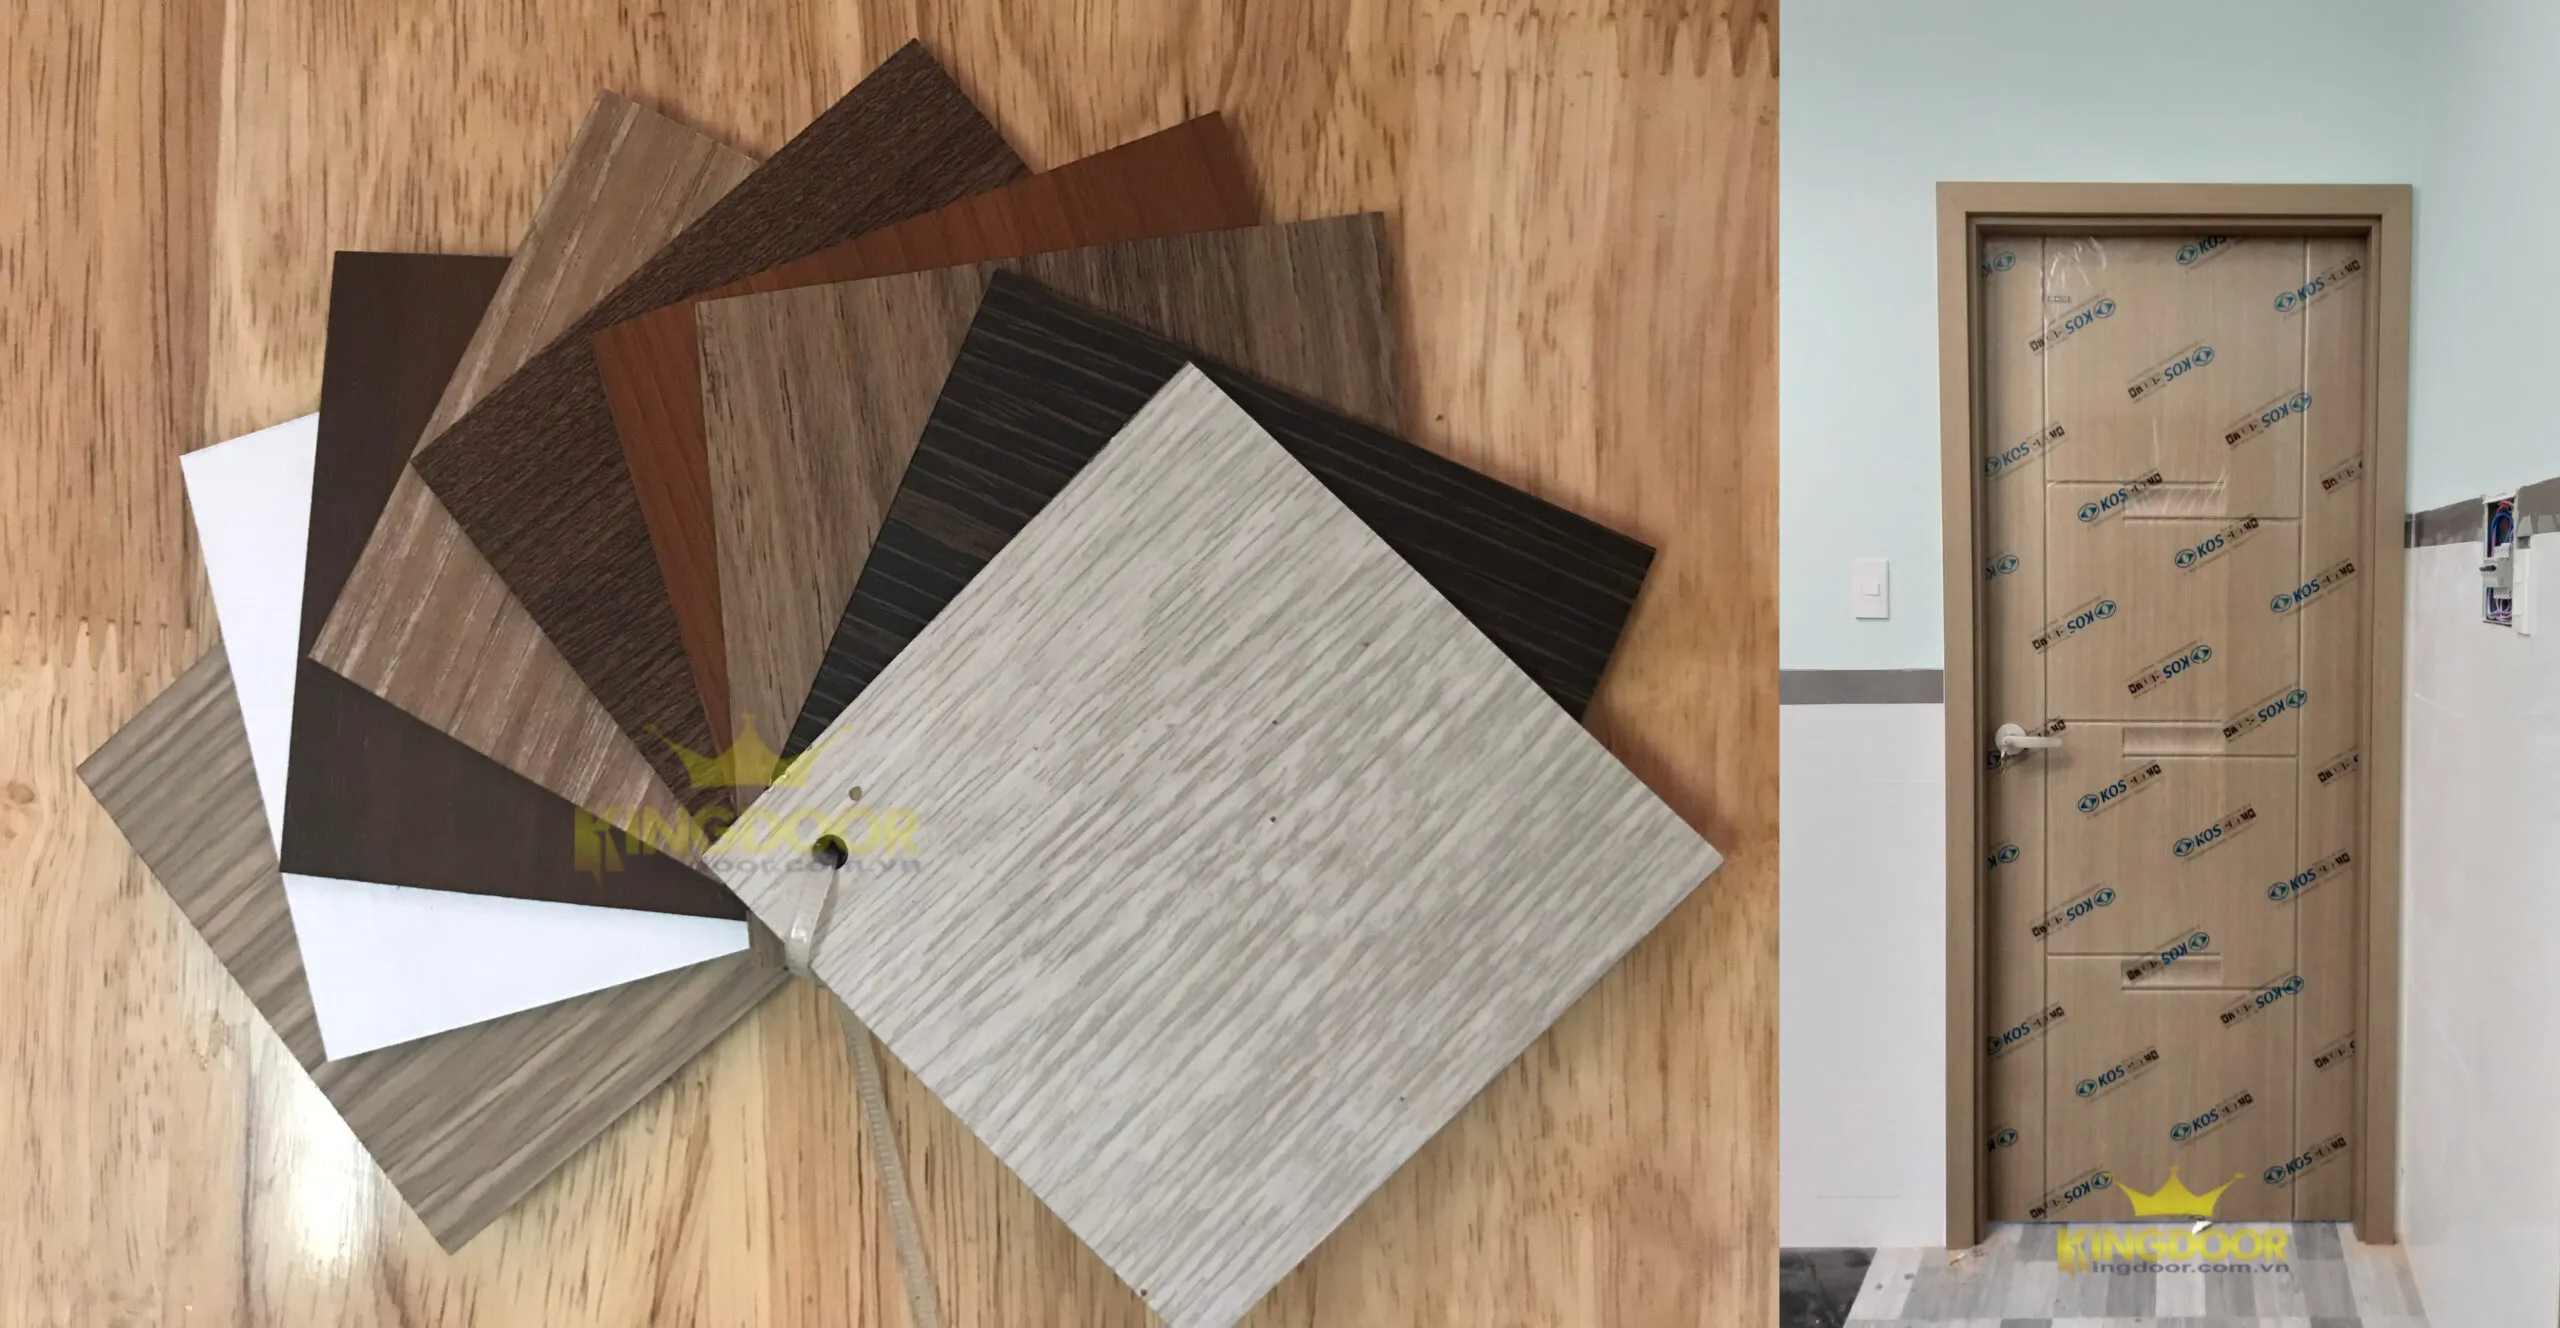 Bảng màu cửa nhựa ABS Hàn Quốc, màu sắc tạo vân gỗ trông giống như gỗ thật.